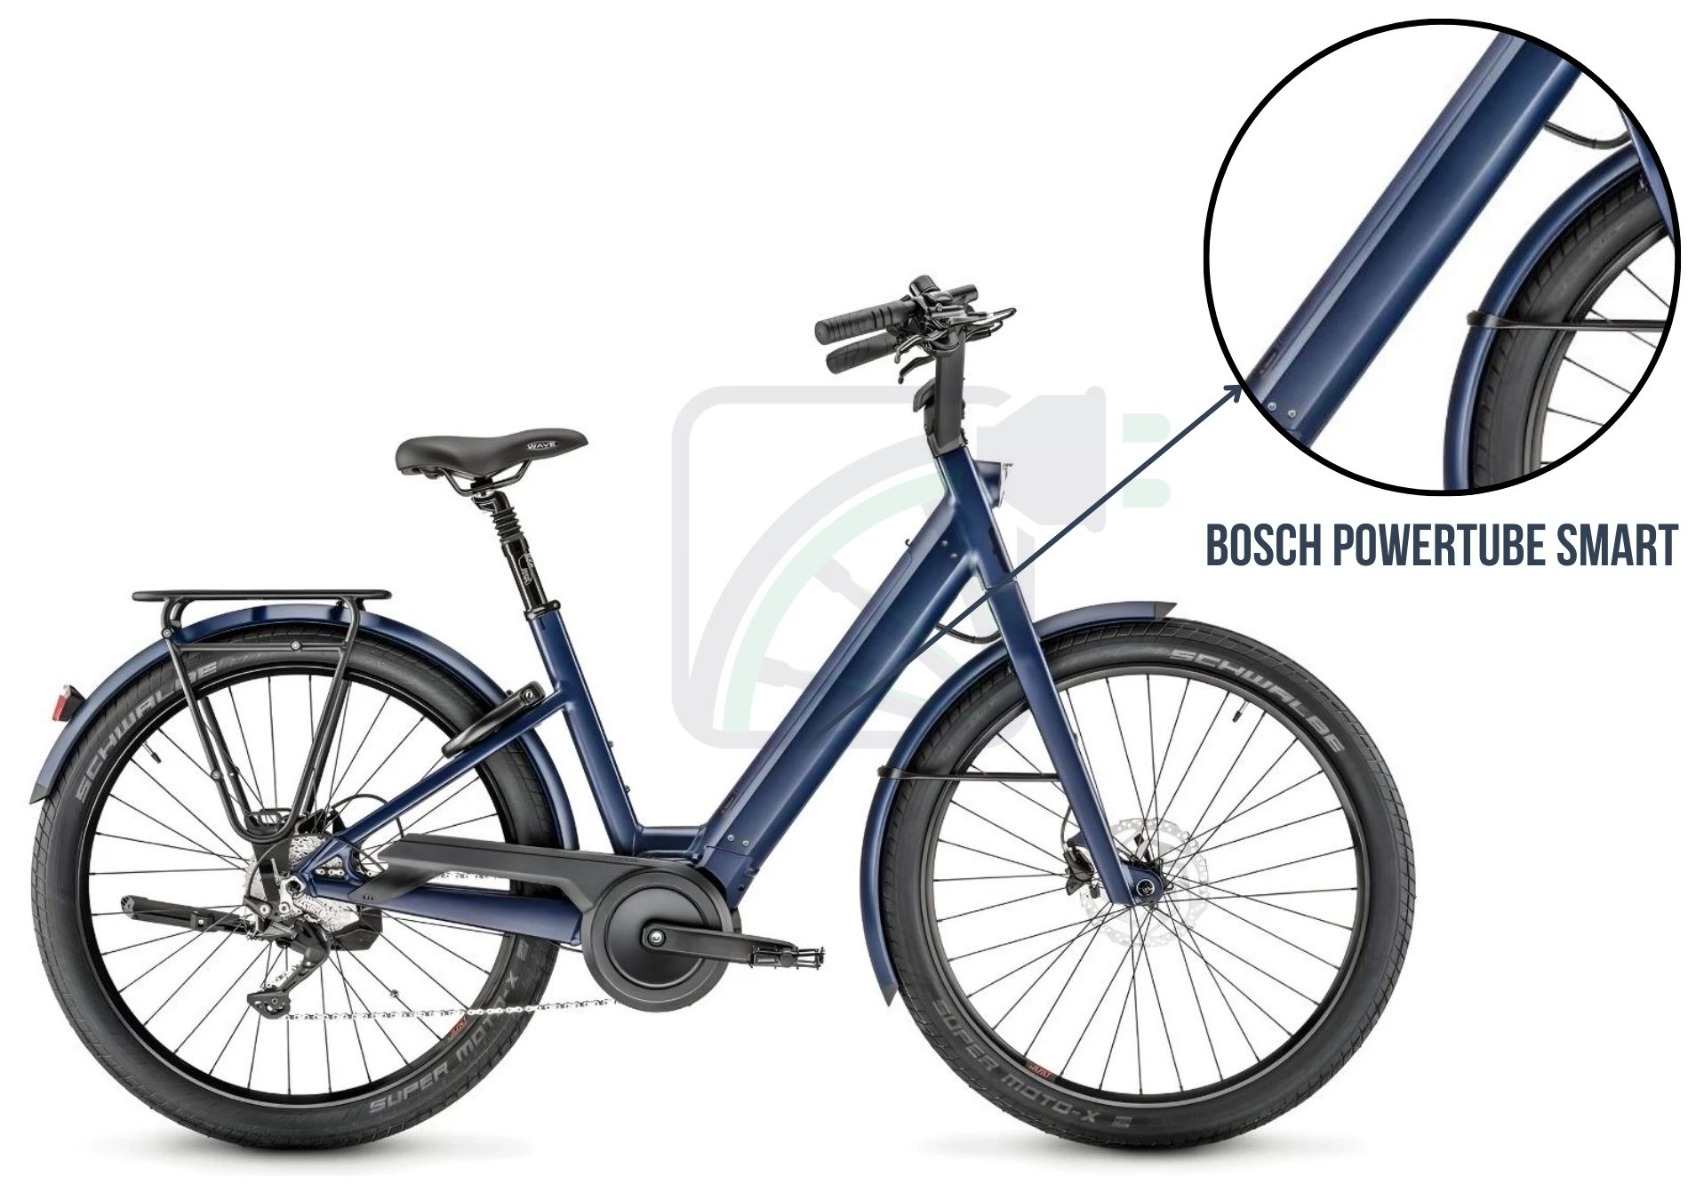 Foto af en elektrisk cykel, med fokus på cyklens batteri. Batteriet, der vises her, er Bosch PowerTube. Derudover nævnes også de forskellige batterier, der er tilgængelige til denne cykel. Disse er: Bosch PowerTube 400, 500, 625 og 750. Disse batterier er tilgængelige i både SMART og ikke-SMART varianter.